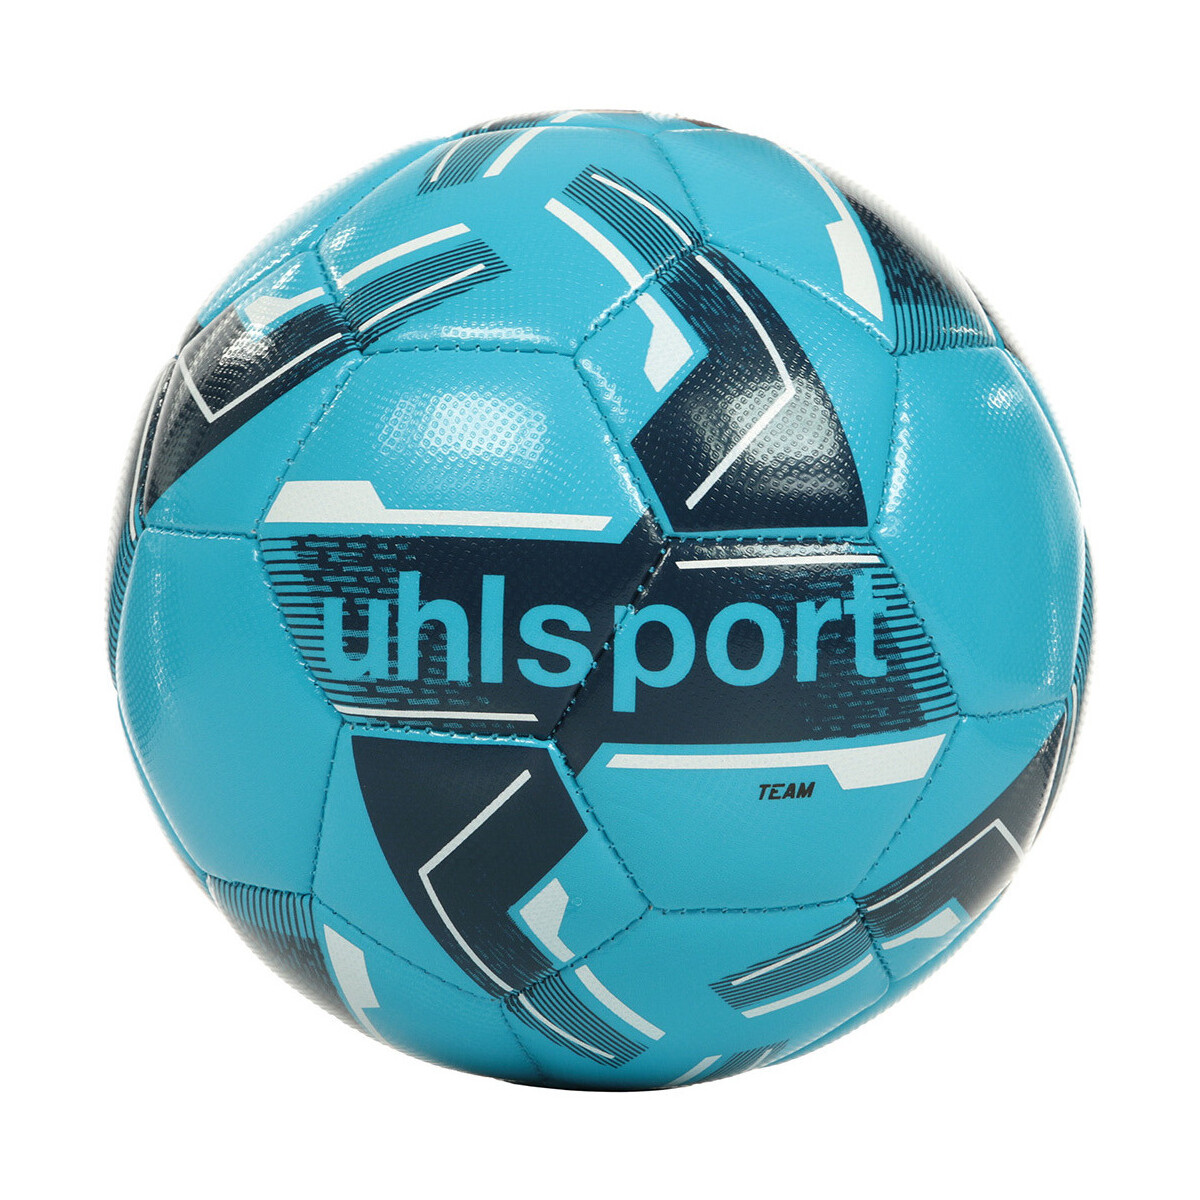 Accessoires Ballons de sport Uhlsport Team Bleu